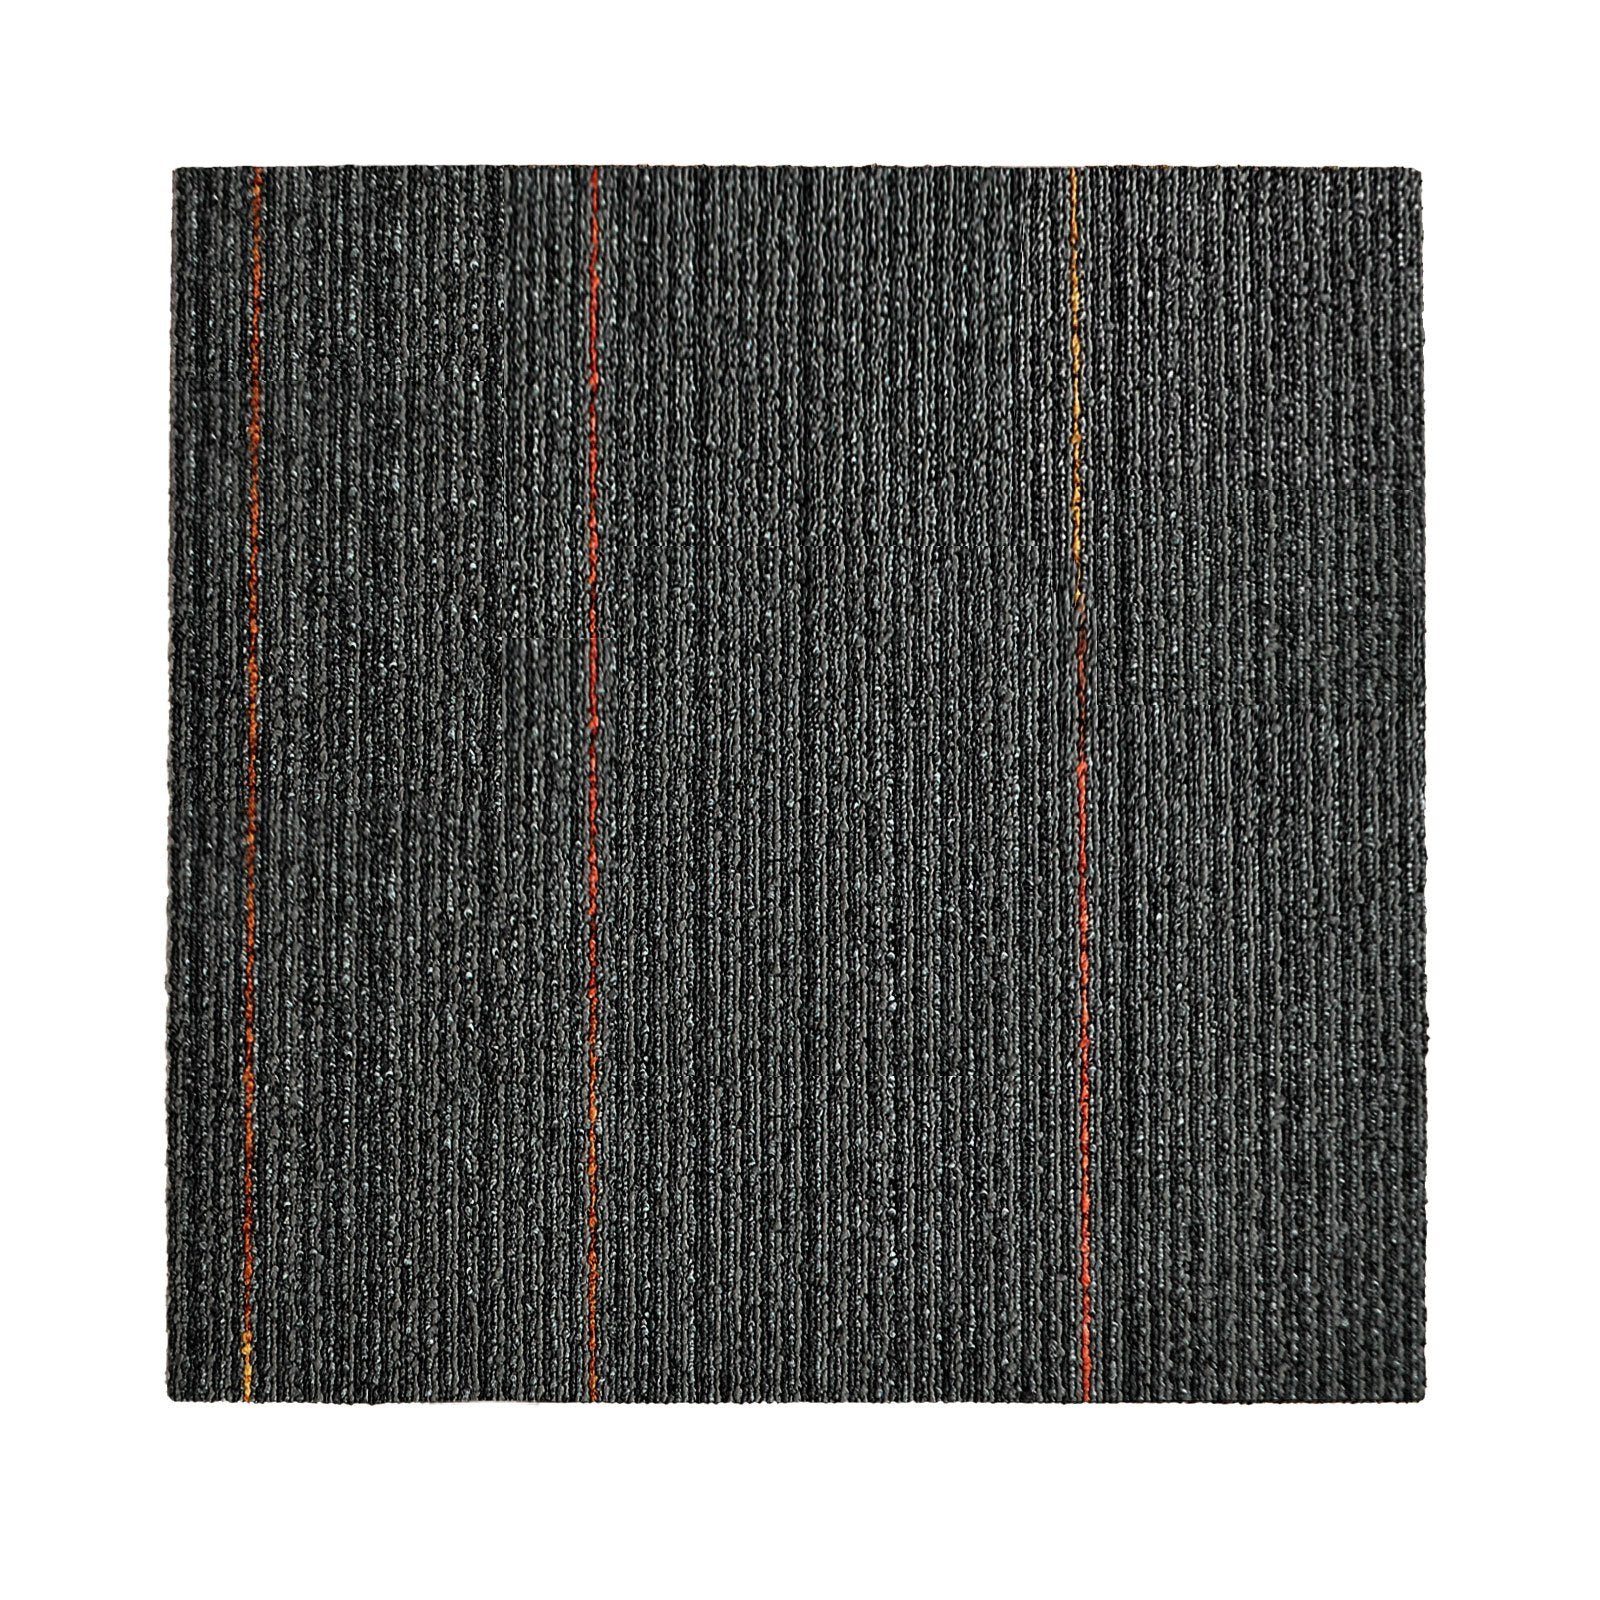 Teppichfliese Berlin, Bodenschutz, Erhältlich in 5 Farben, 50 x 50 cm, casa pura, Quadratisch, Höhe: 6 mm, Selbstliegend